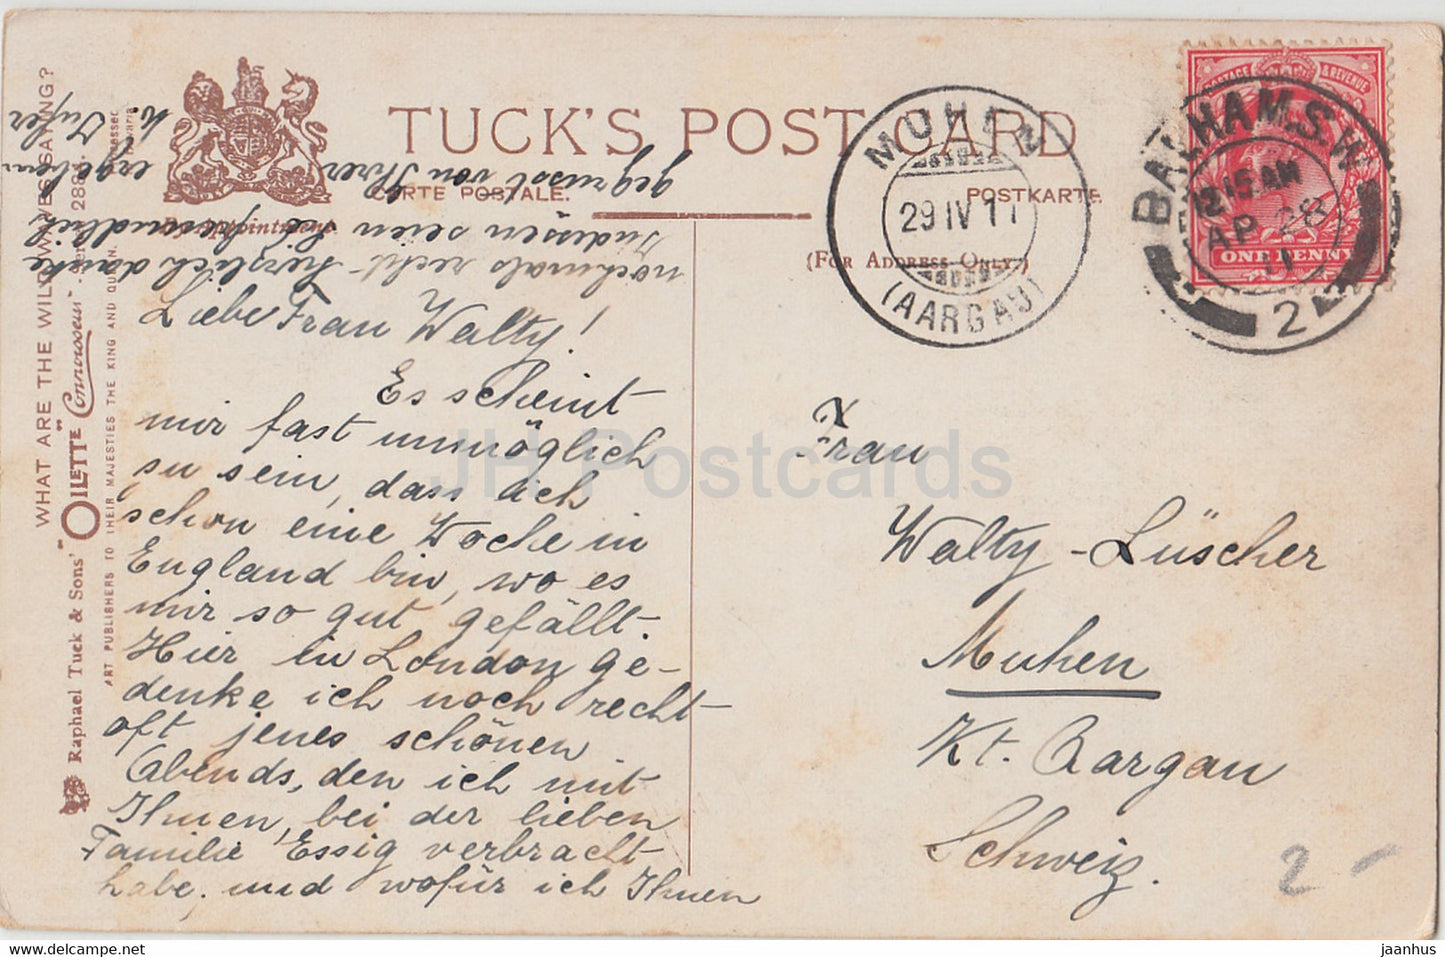 Stormy Sea - Raphael Tuck - Oilette - 2884 - old postcard - 1911 - United Kingdom - used